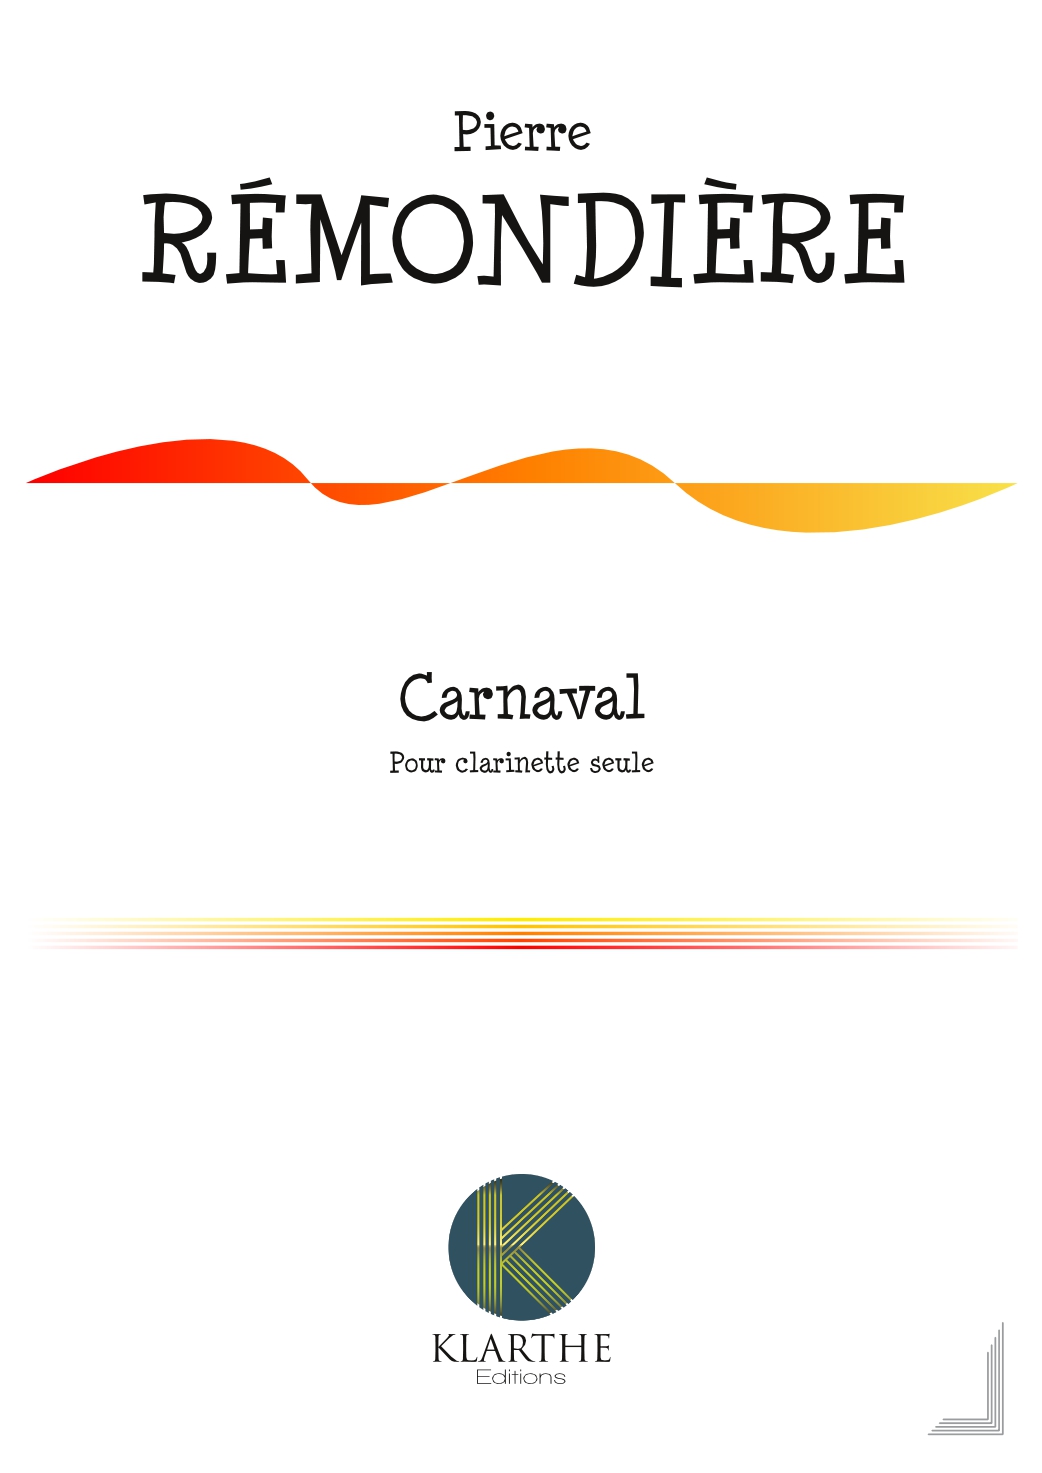 Carnaval (REMONDIERE PIERRE)